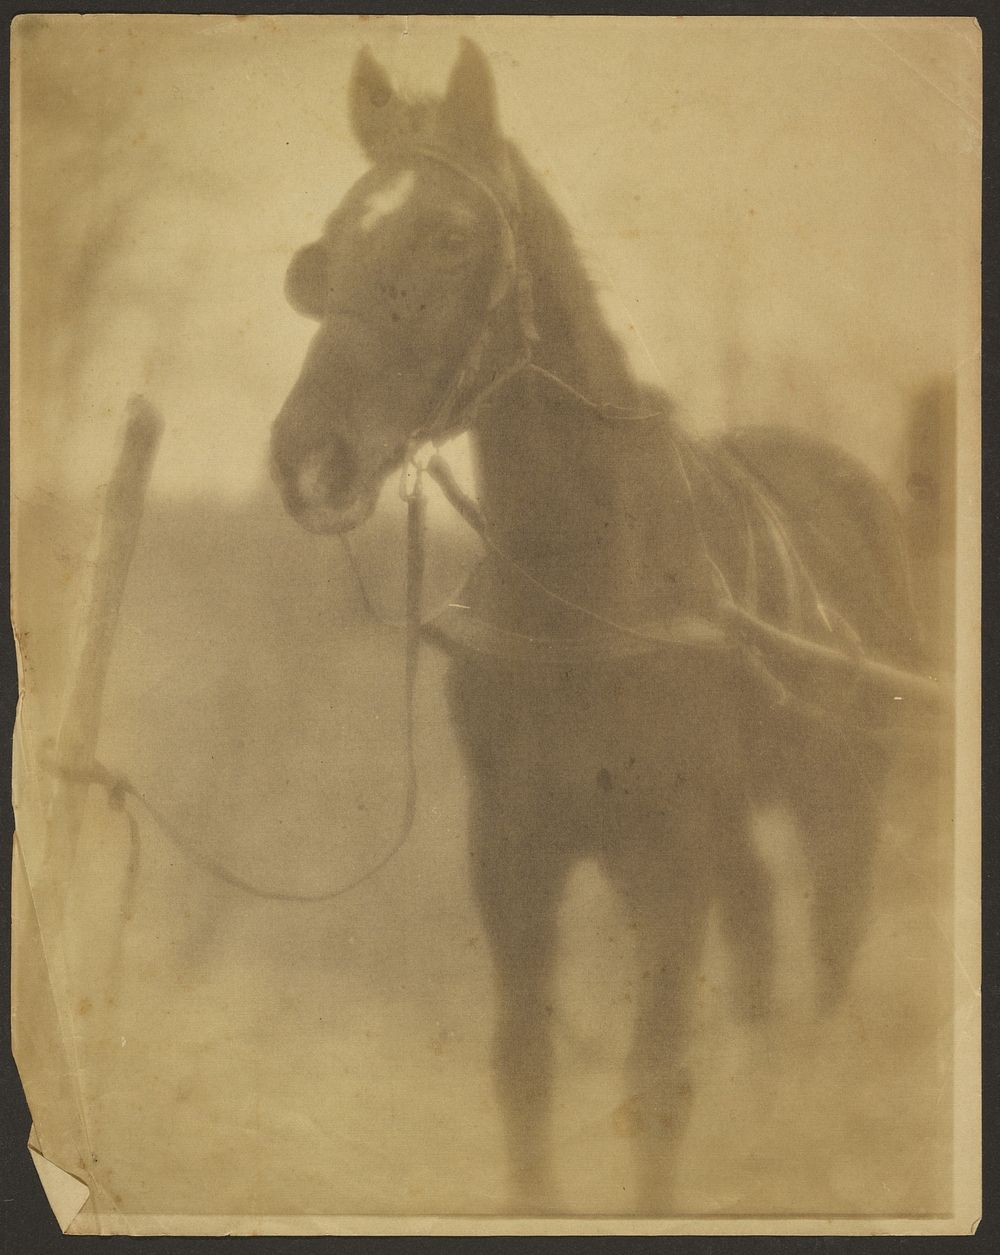 Tethered Horse by Louis Fleckenstein